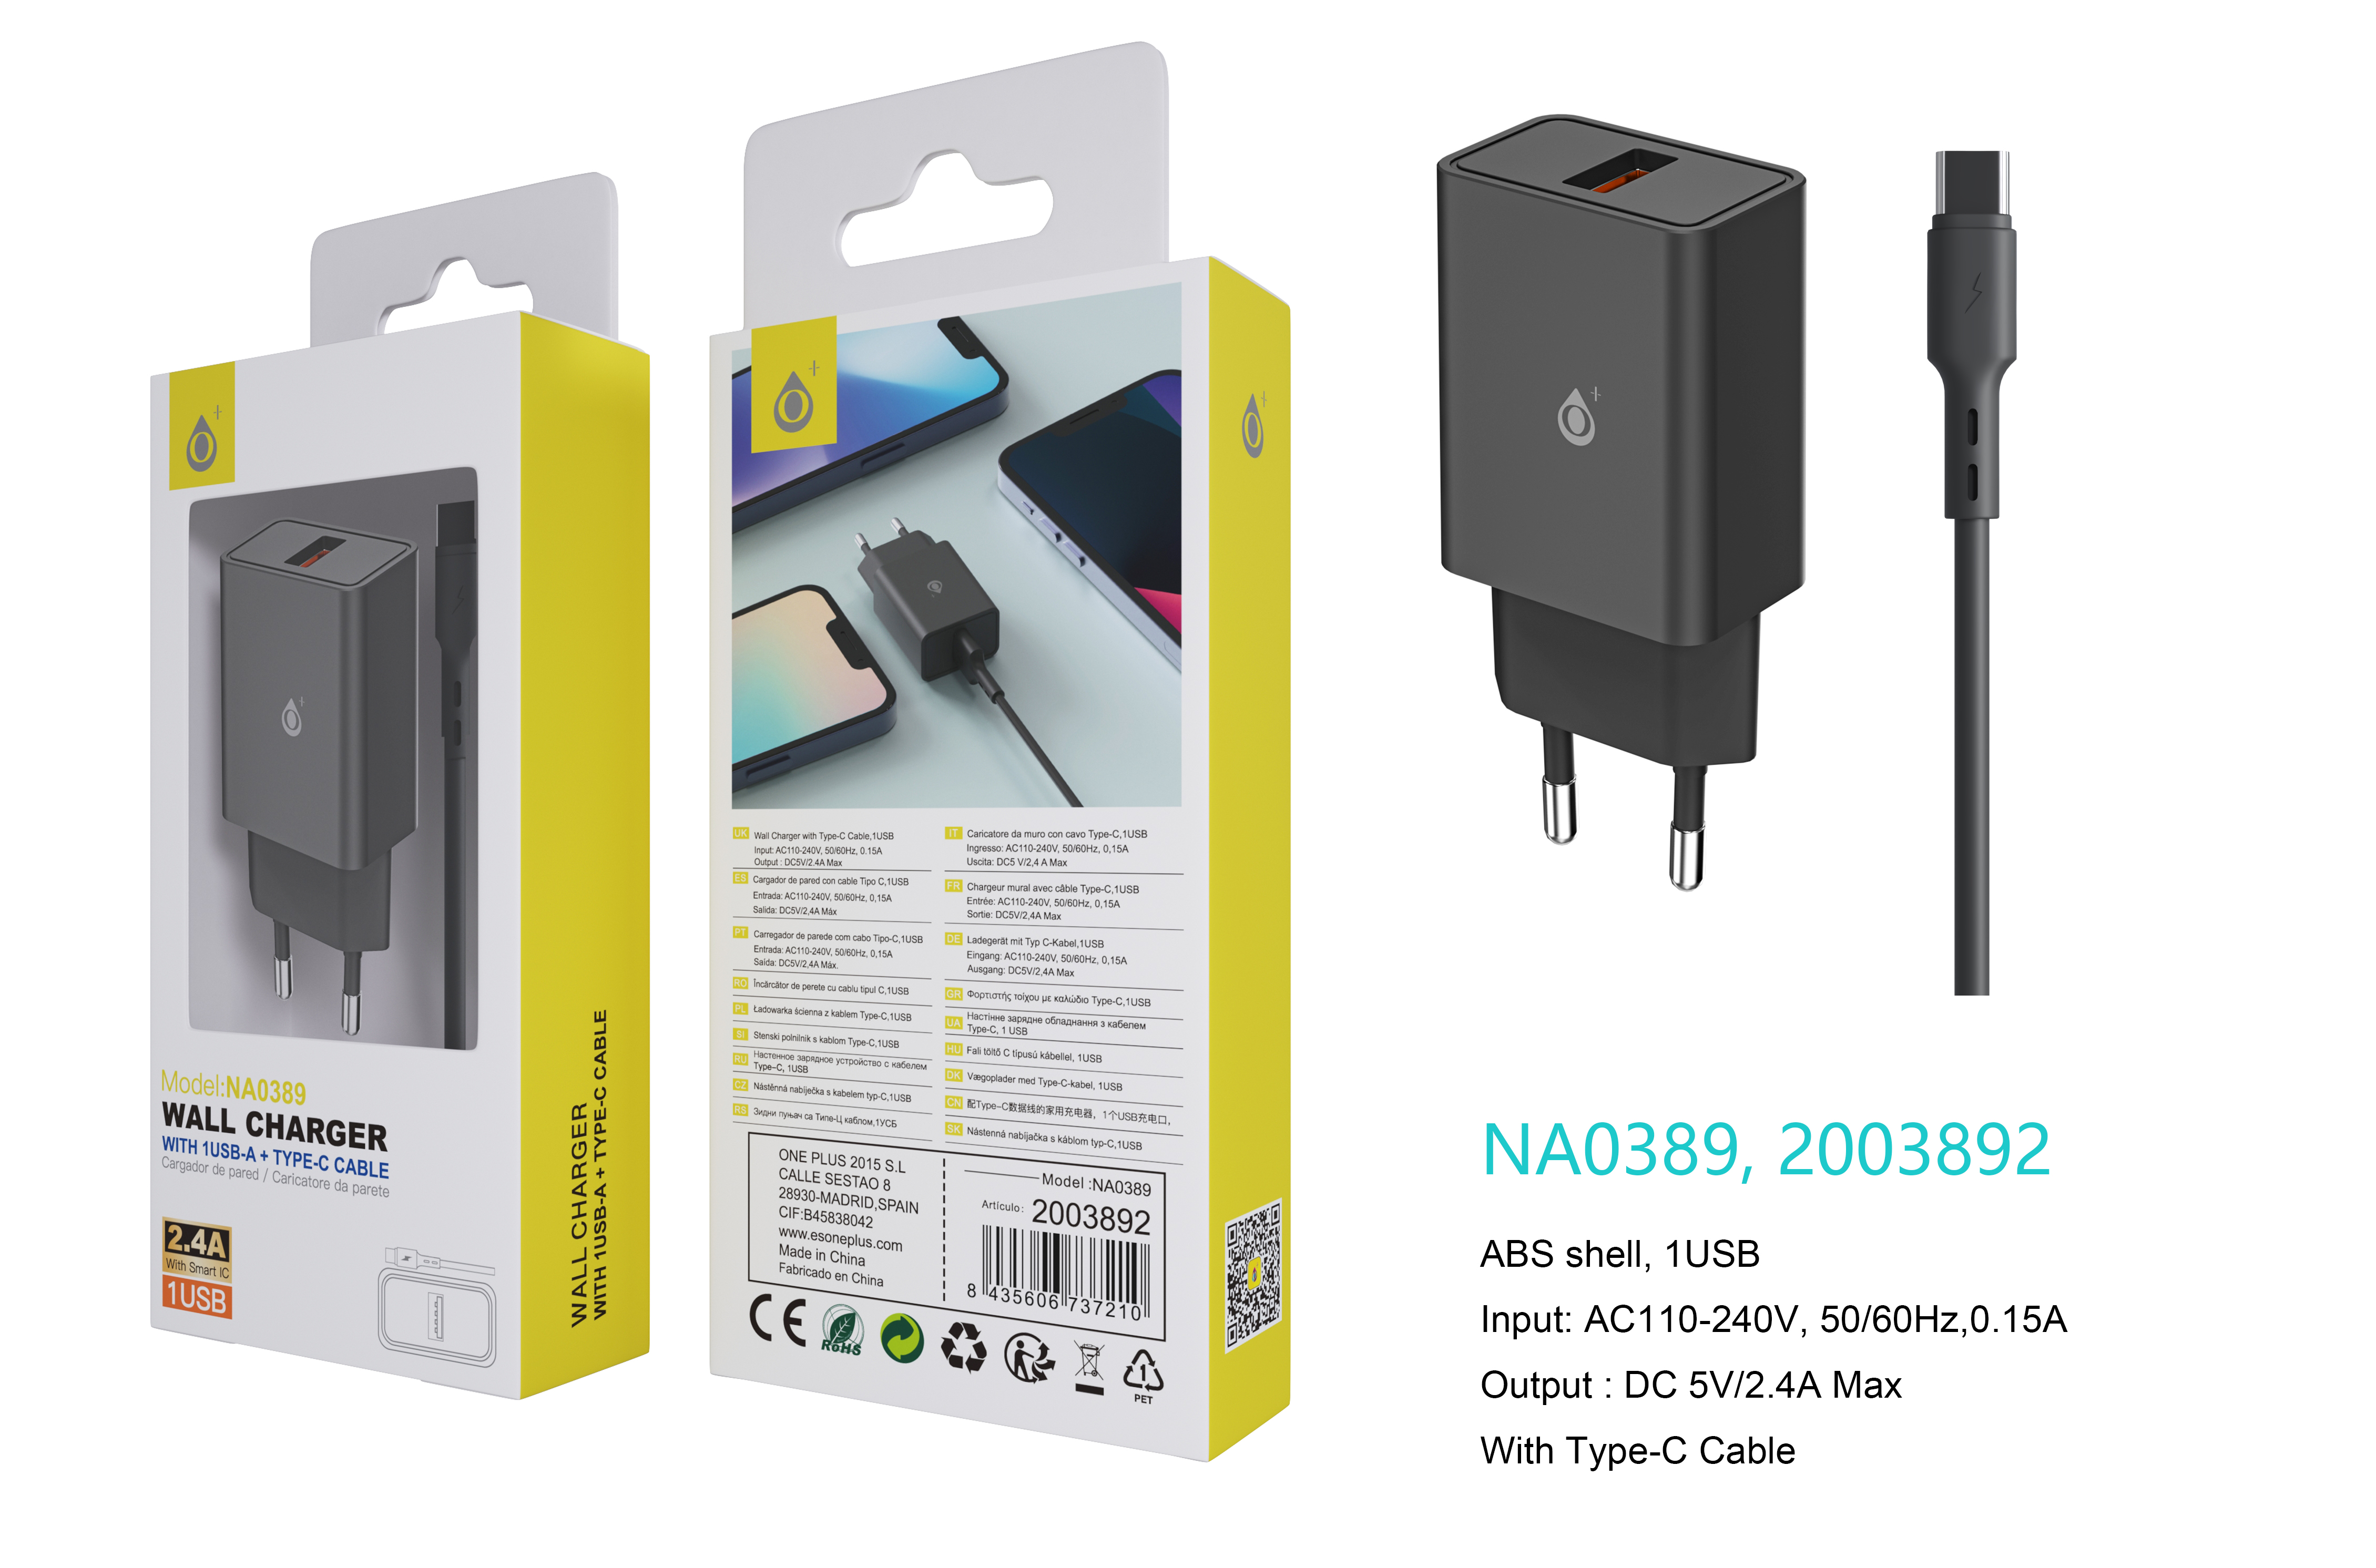 NA0389 NE Cargador de Red KAI 1 USB Con Smart Chip, Con Cable Type-C, 2.4A, Negro